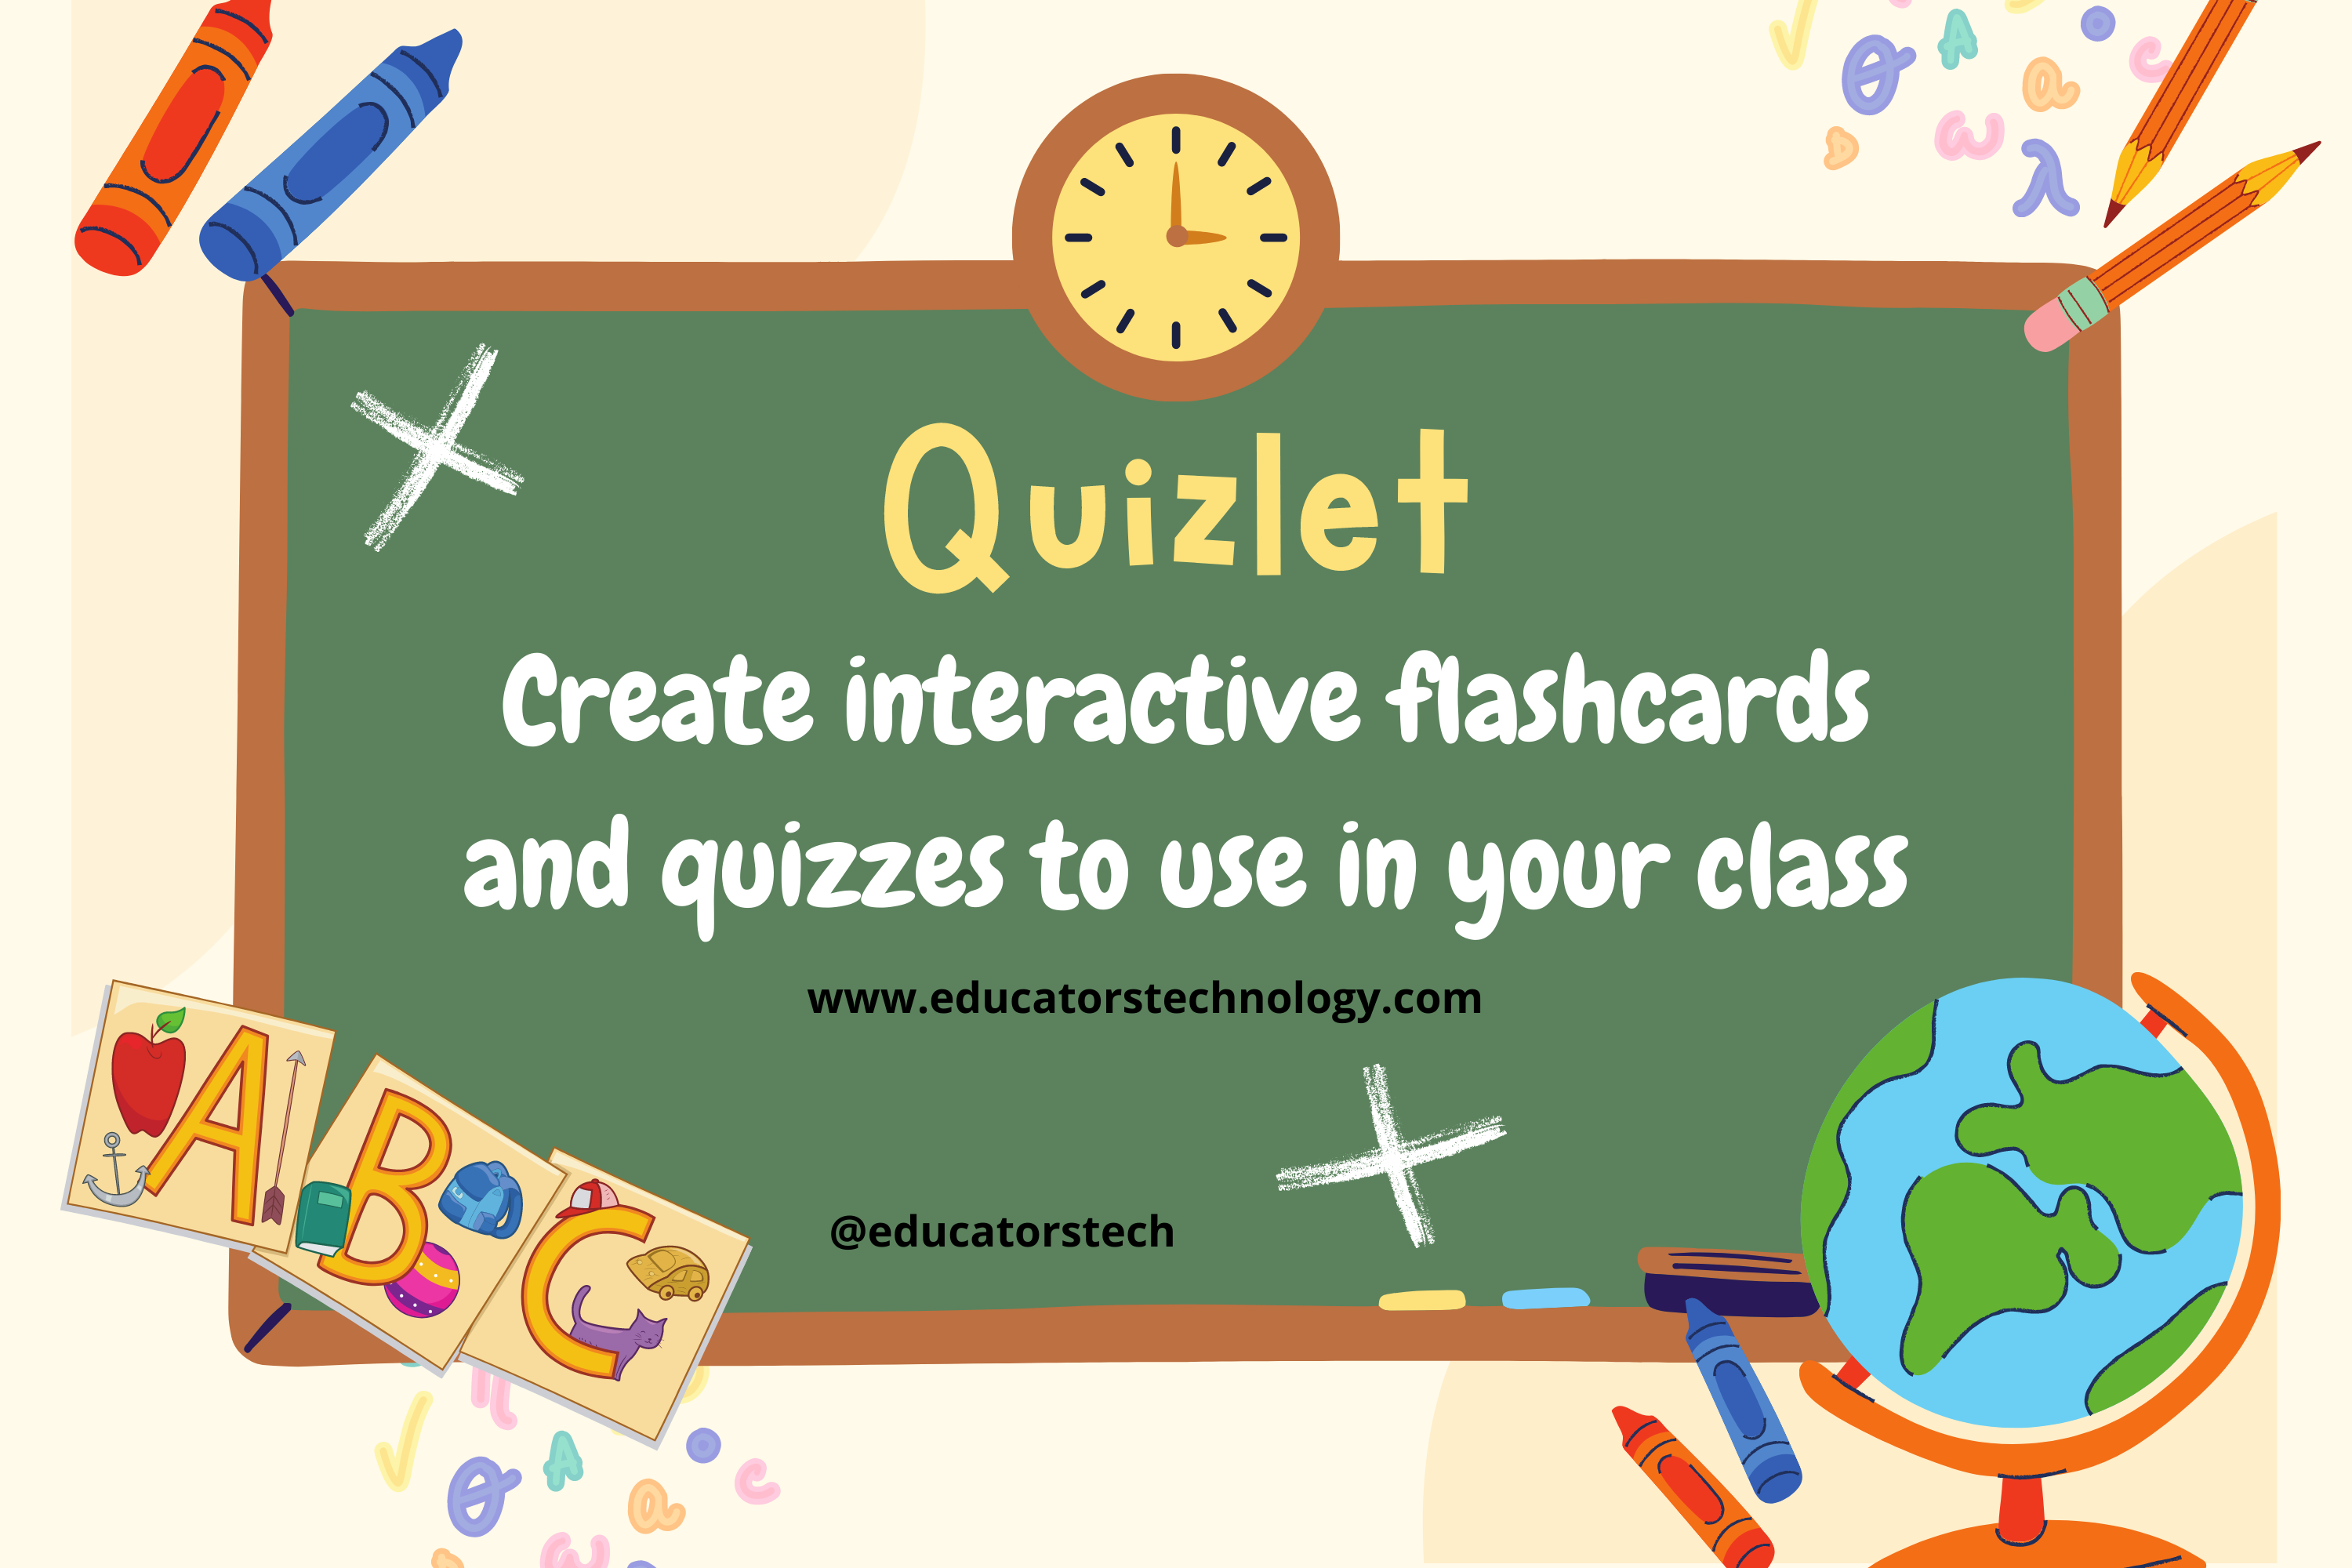 Quizlet's Guide for Educators